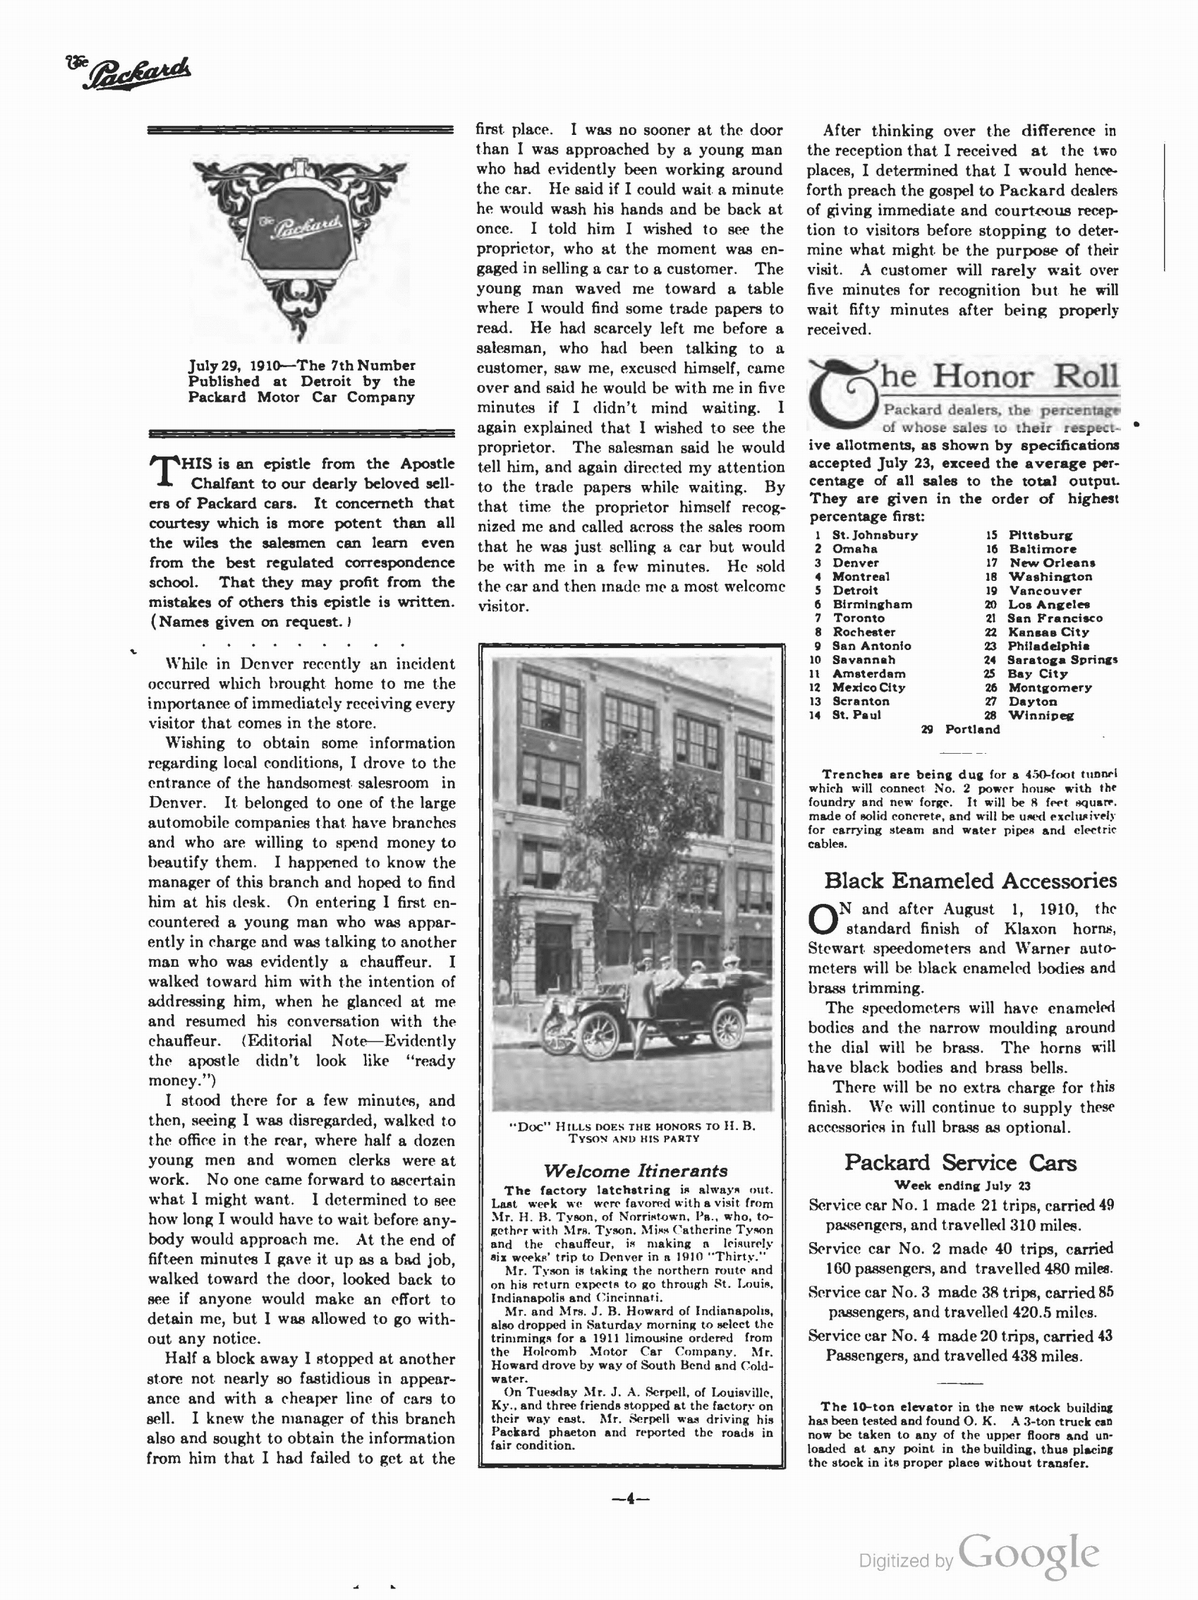 n_1910 'The Packard' Newsletter-102.jpg